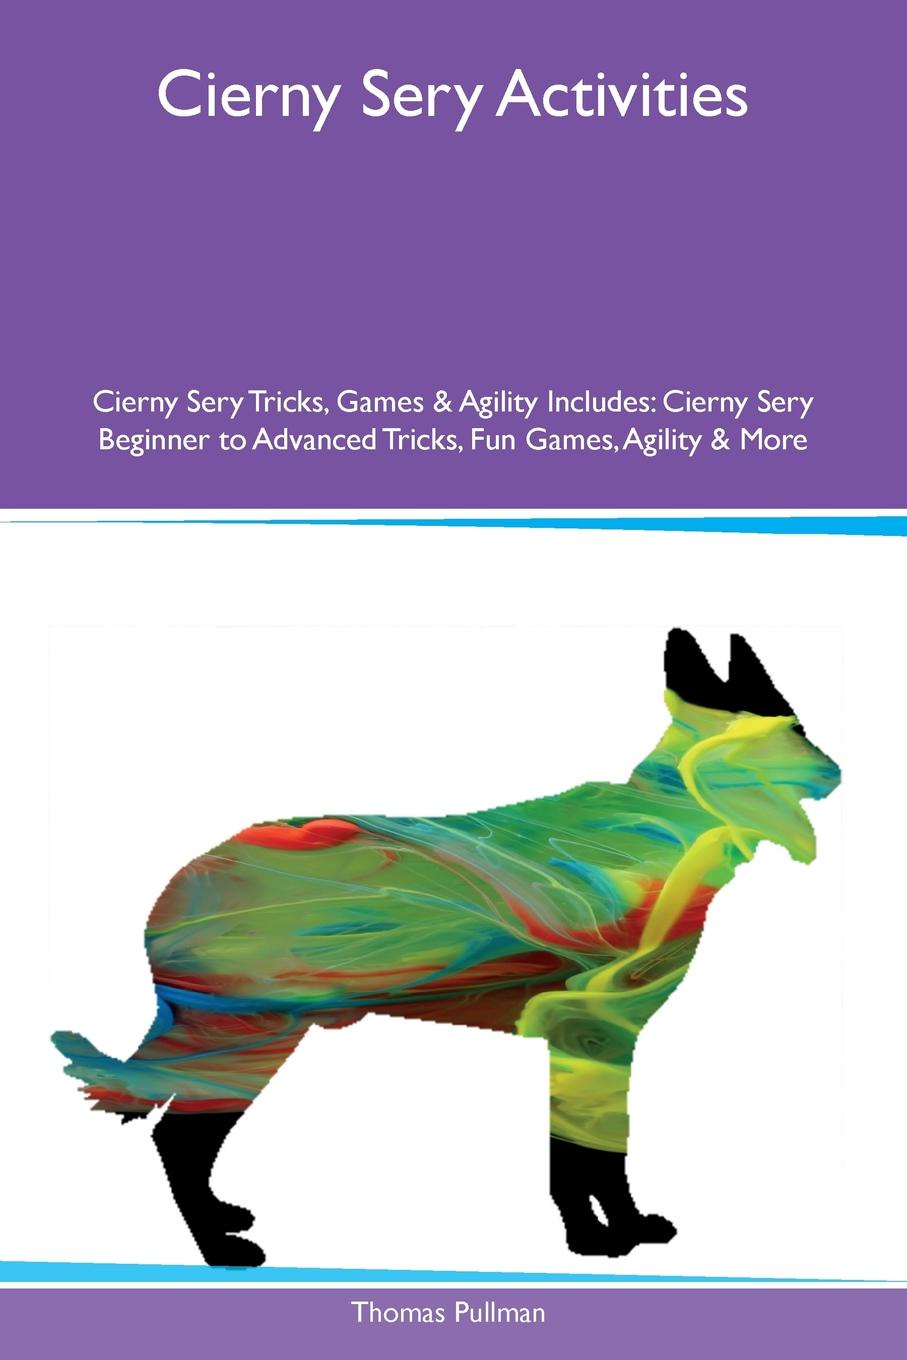 Cierny Sery Activities Cierny Sery Tricks, Games & Agility Includes. Cierny Sery Beginner to Advanced Tricks, Fun Games, Agility & More